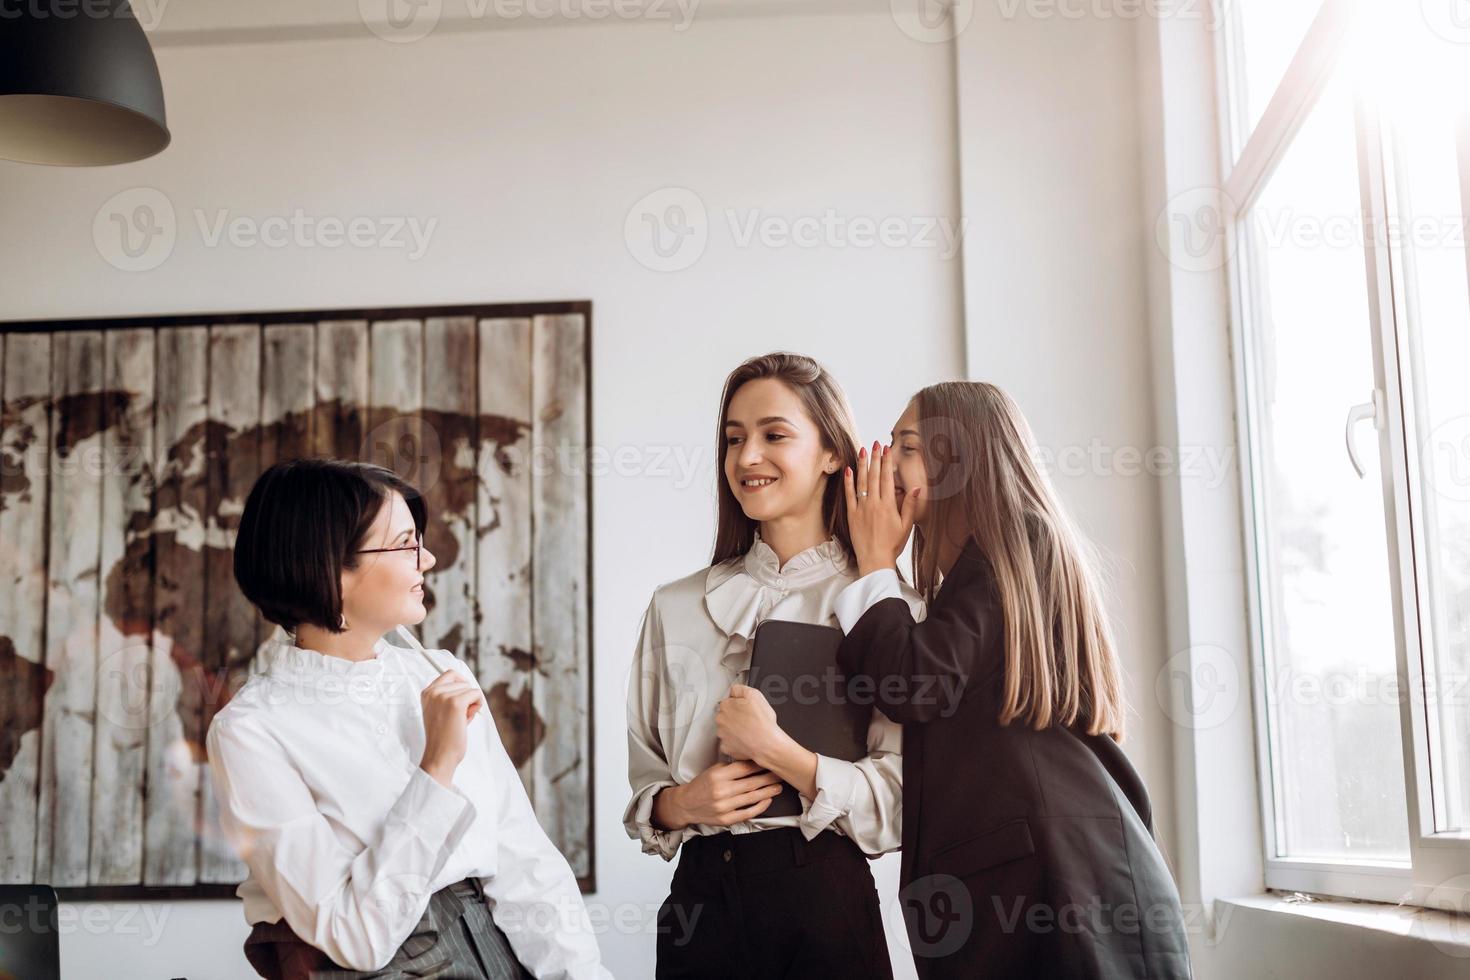 conceito de trabalho, questões polêmicas. três garotas confiantes conversando no escritório, uma sussurra no ouvido da outra foto